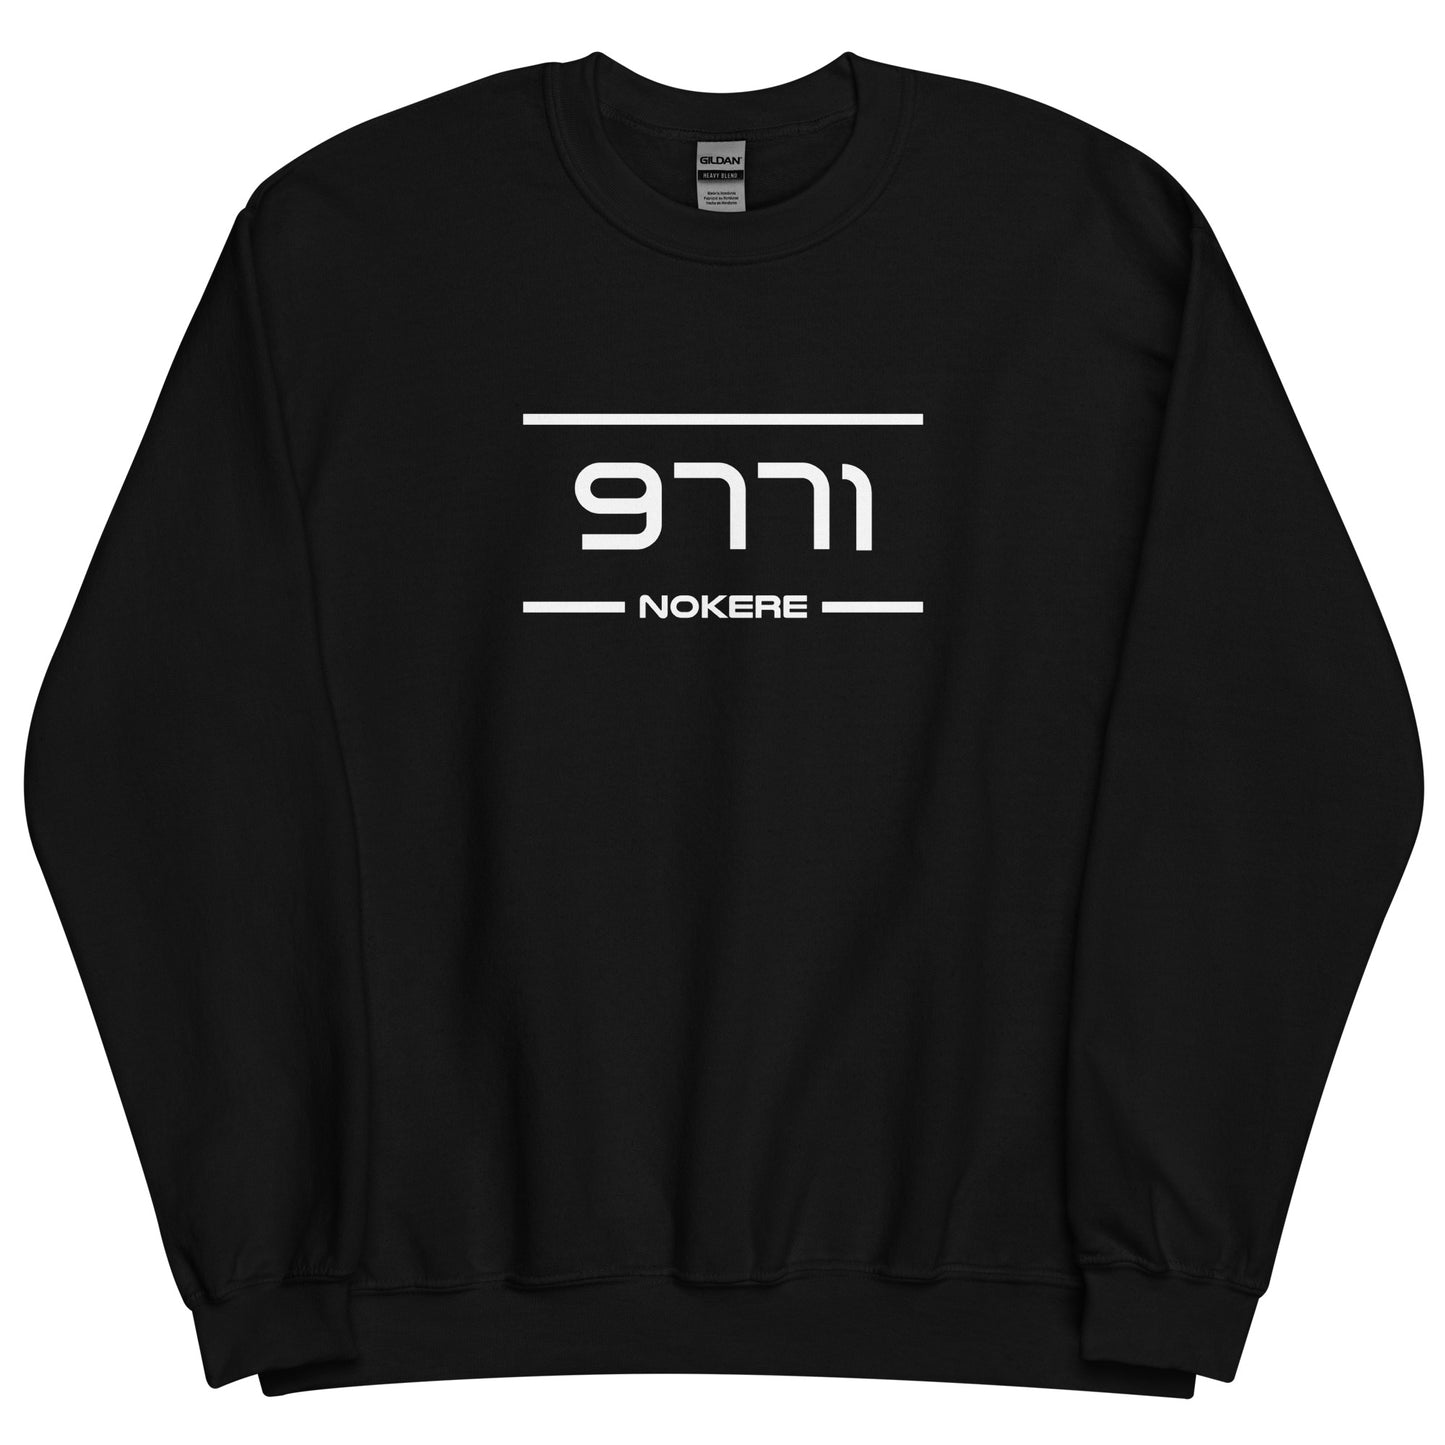 Sweater - 9771 - Nokere (M/V)